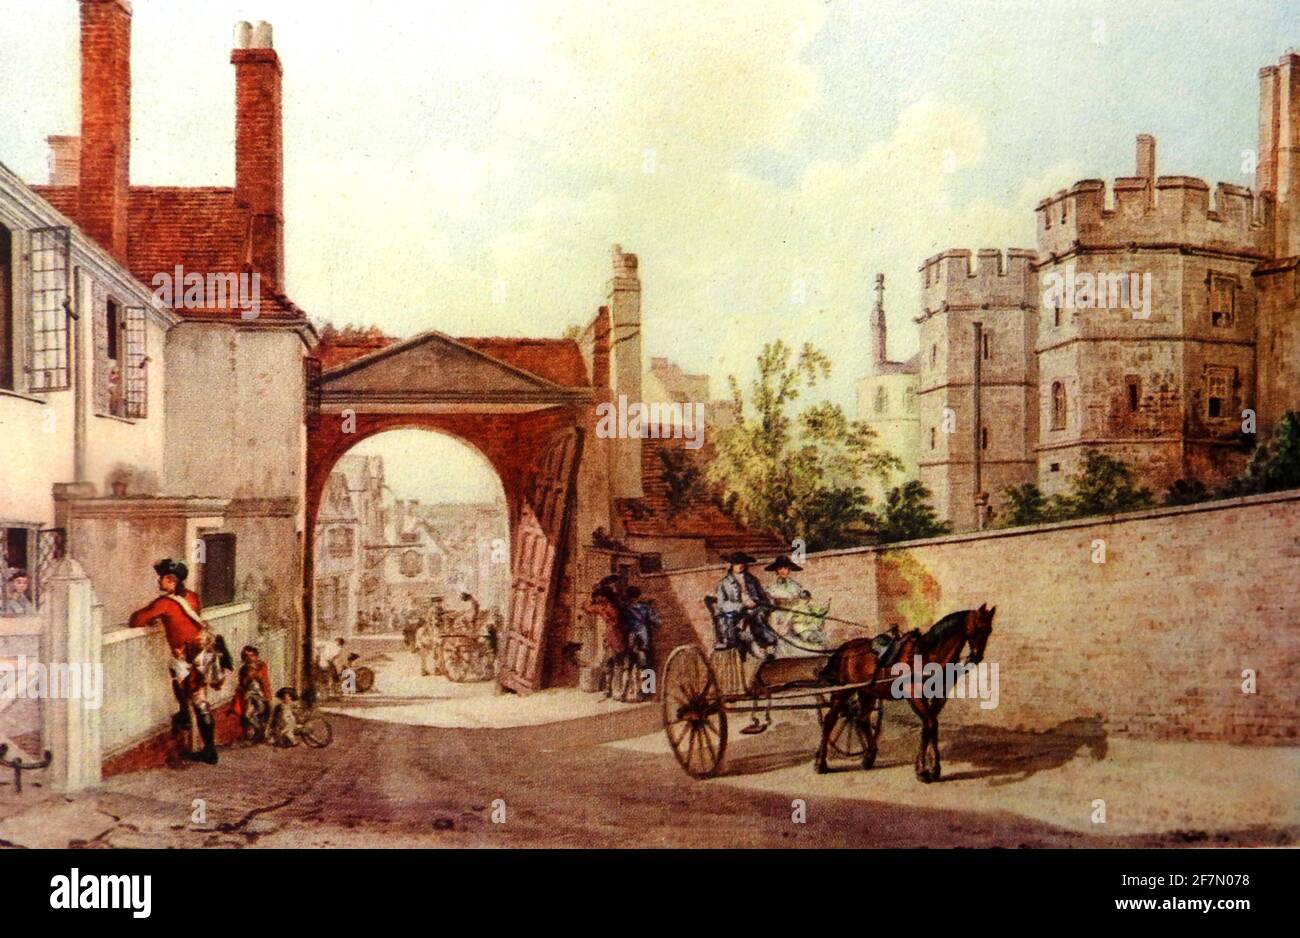 L'approche de l'entrée principale du château de Windsor, Windsor, Angleterre comme elle était au milieu du XVIIIe siècle montrant un cheval et une voiturette sur Castle Hill près de la porte d'accès de Henry VIII. Un garde hors service est vu parler par-dessus le mur à une femme au foyer. La ville de Windsor est en arrière-plan. Le château original a été construit après l'invasion normande de l'Angleterre par Guillaume le Conquérant et a continué d'être occupé par le monarque régnant depuis. C'est le palais le plus occupé d'Europe Banque D'Images